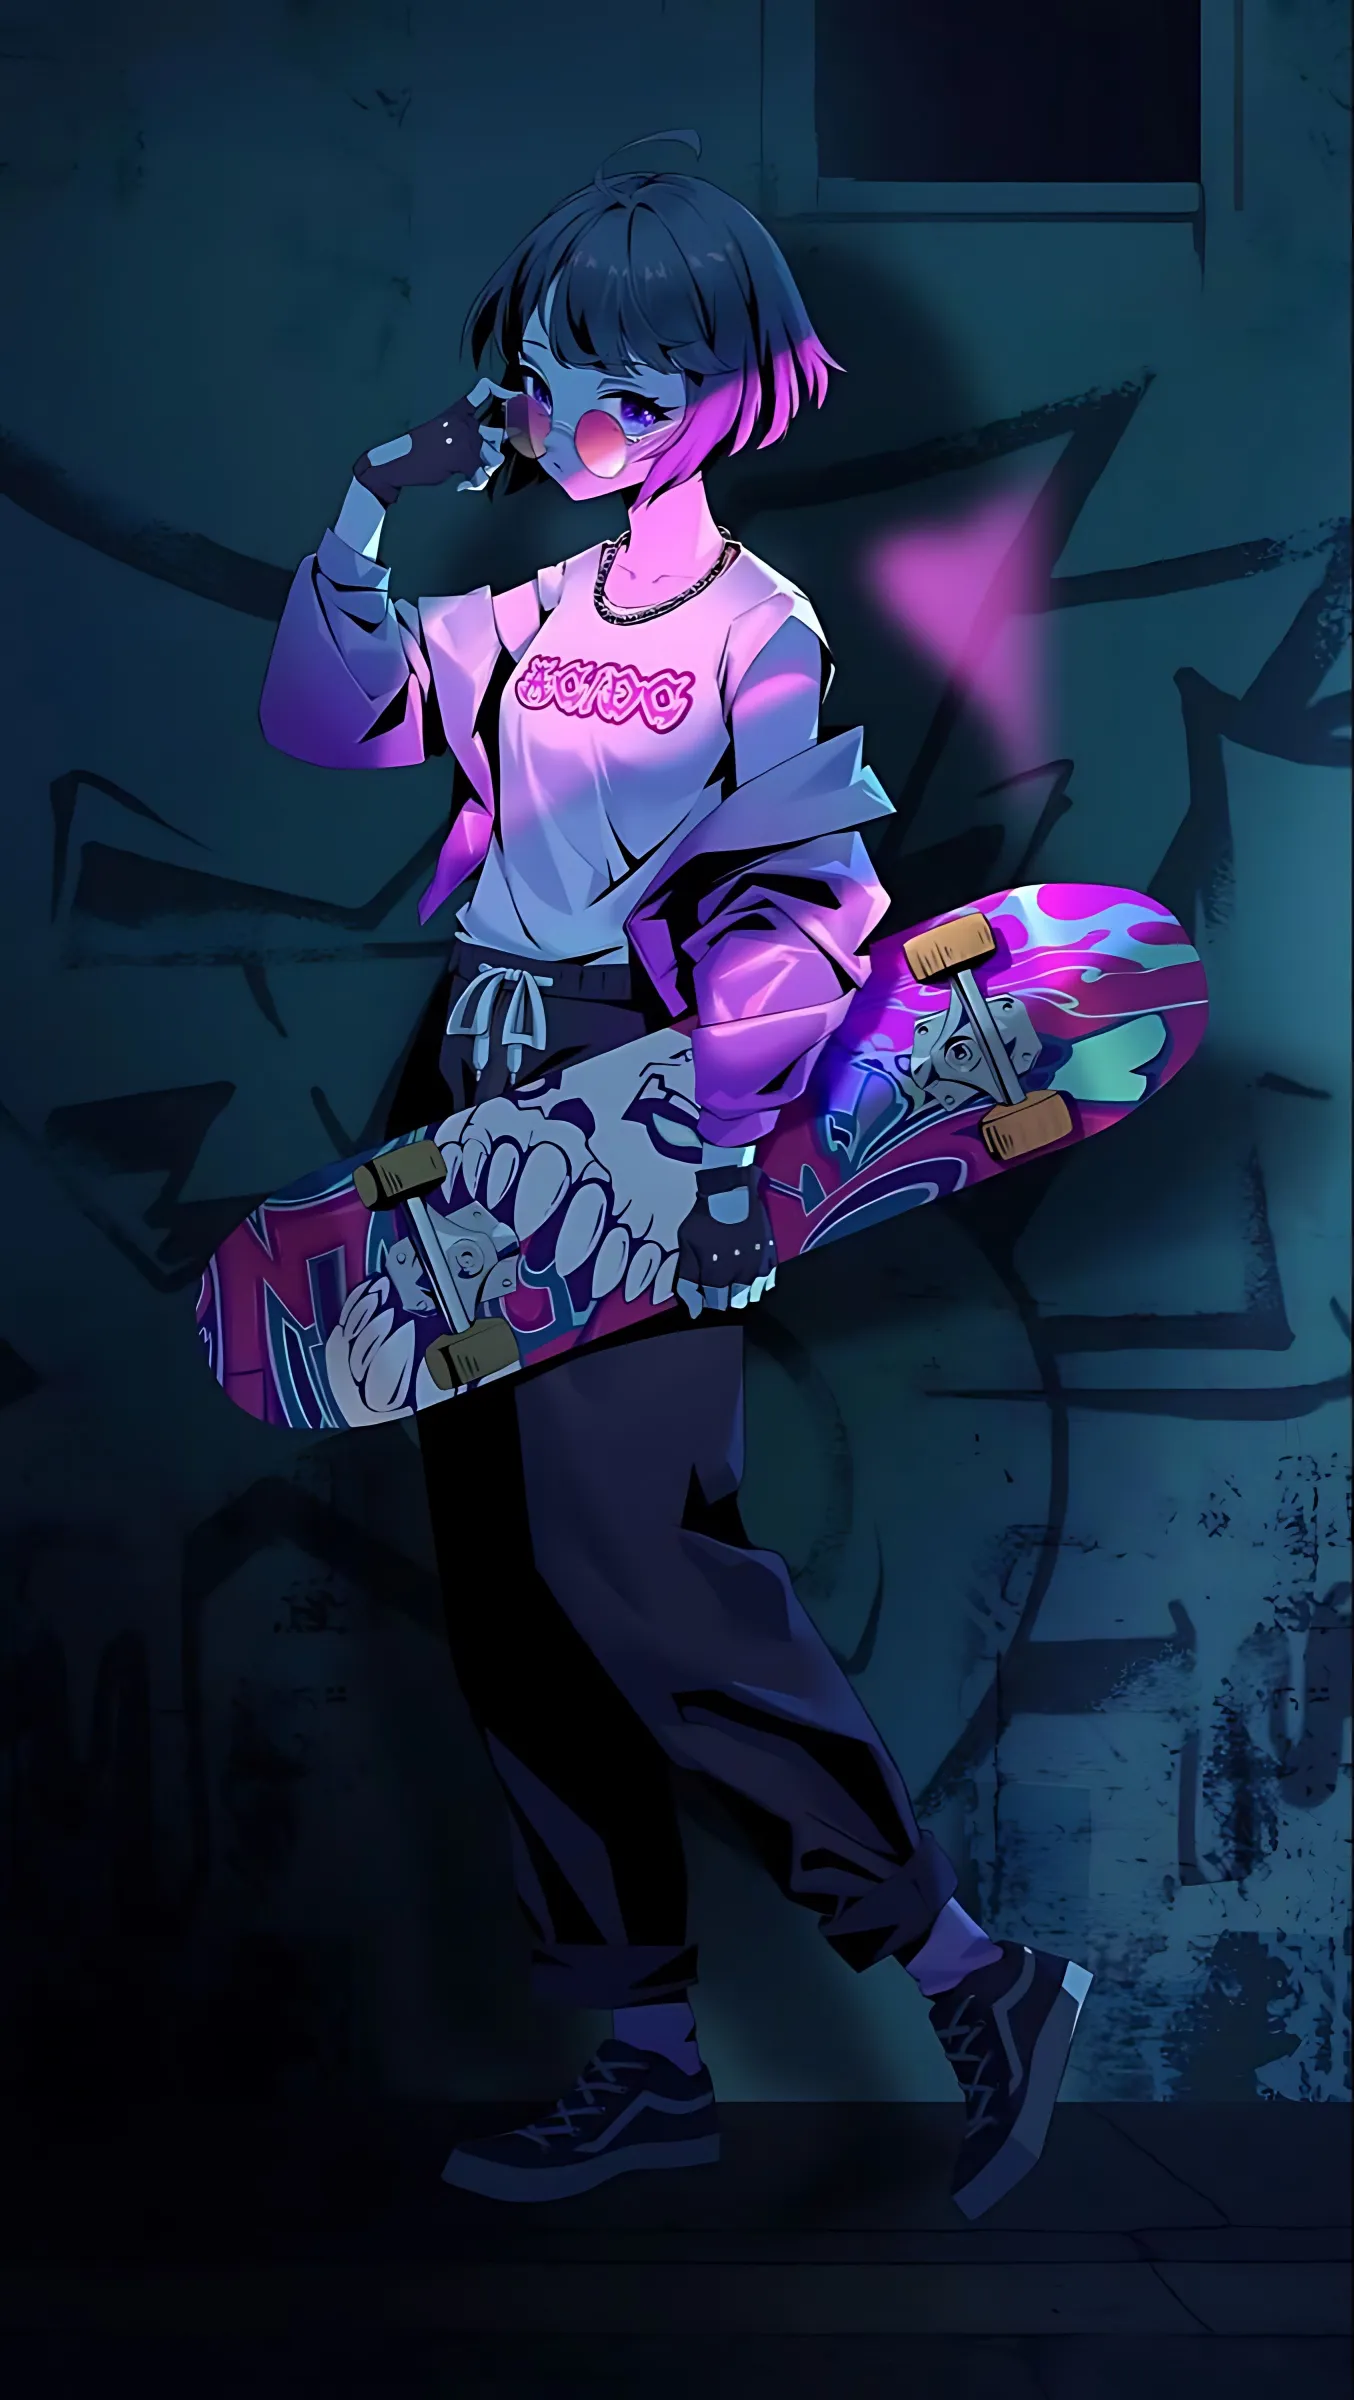 thumb for Skateboard Girl Wallpaper